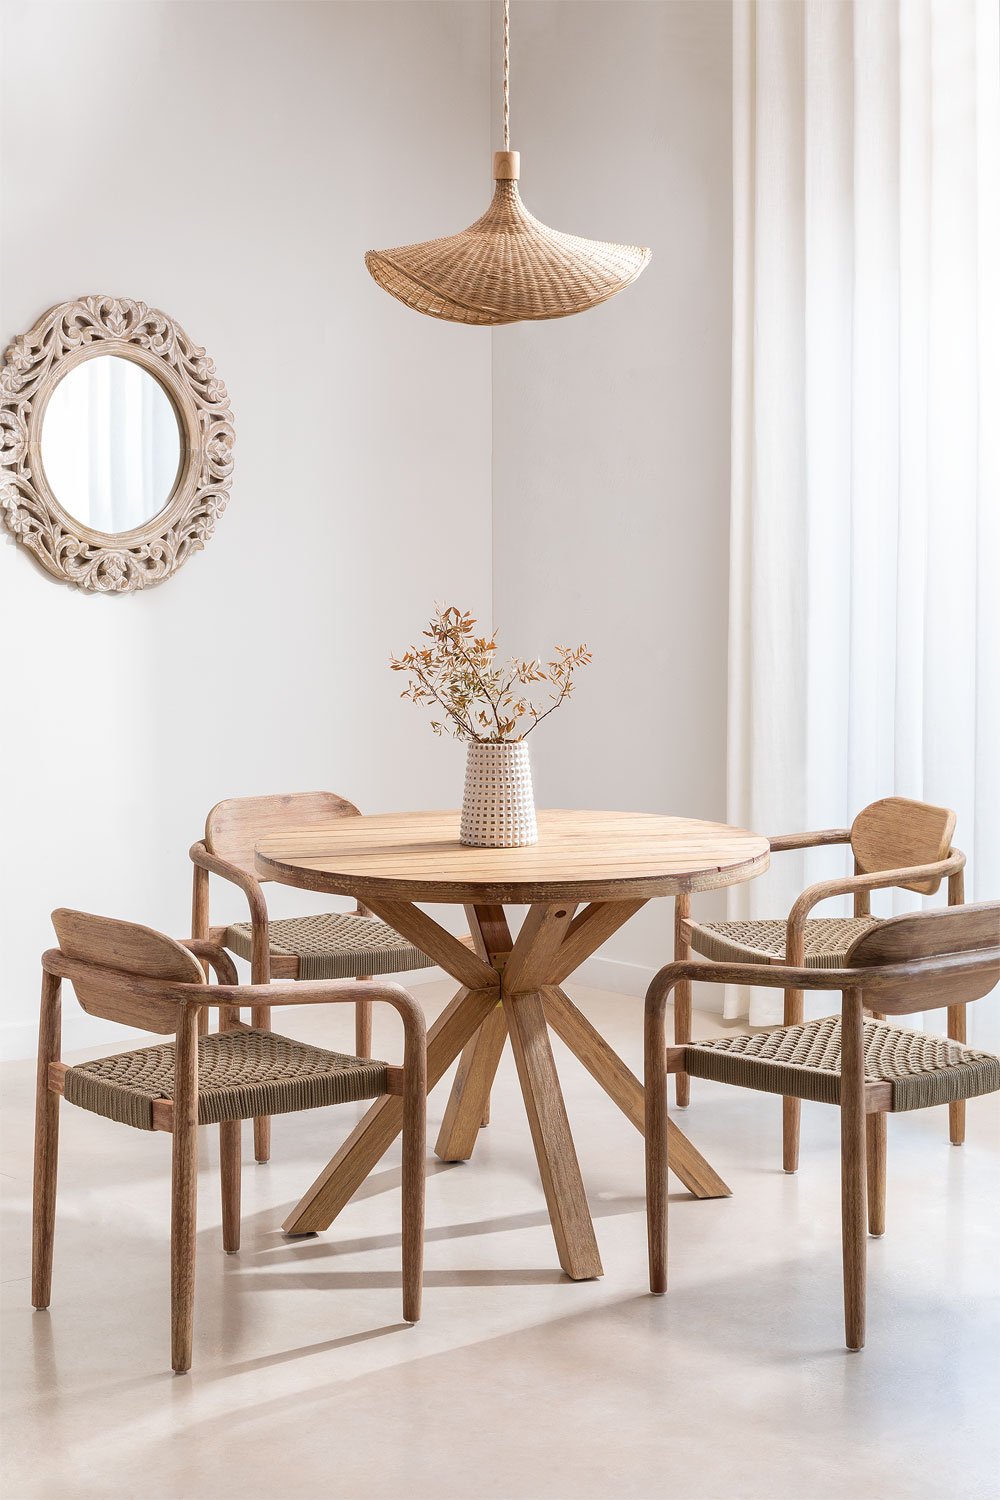 Ronde tafelset (Ø100 cm) en 4 eetkamerstoelen met armleuningen in hout Naele , galerij beeld 1